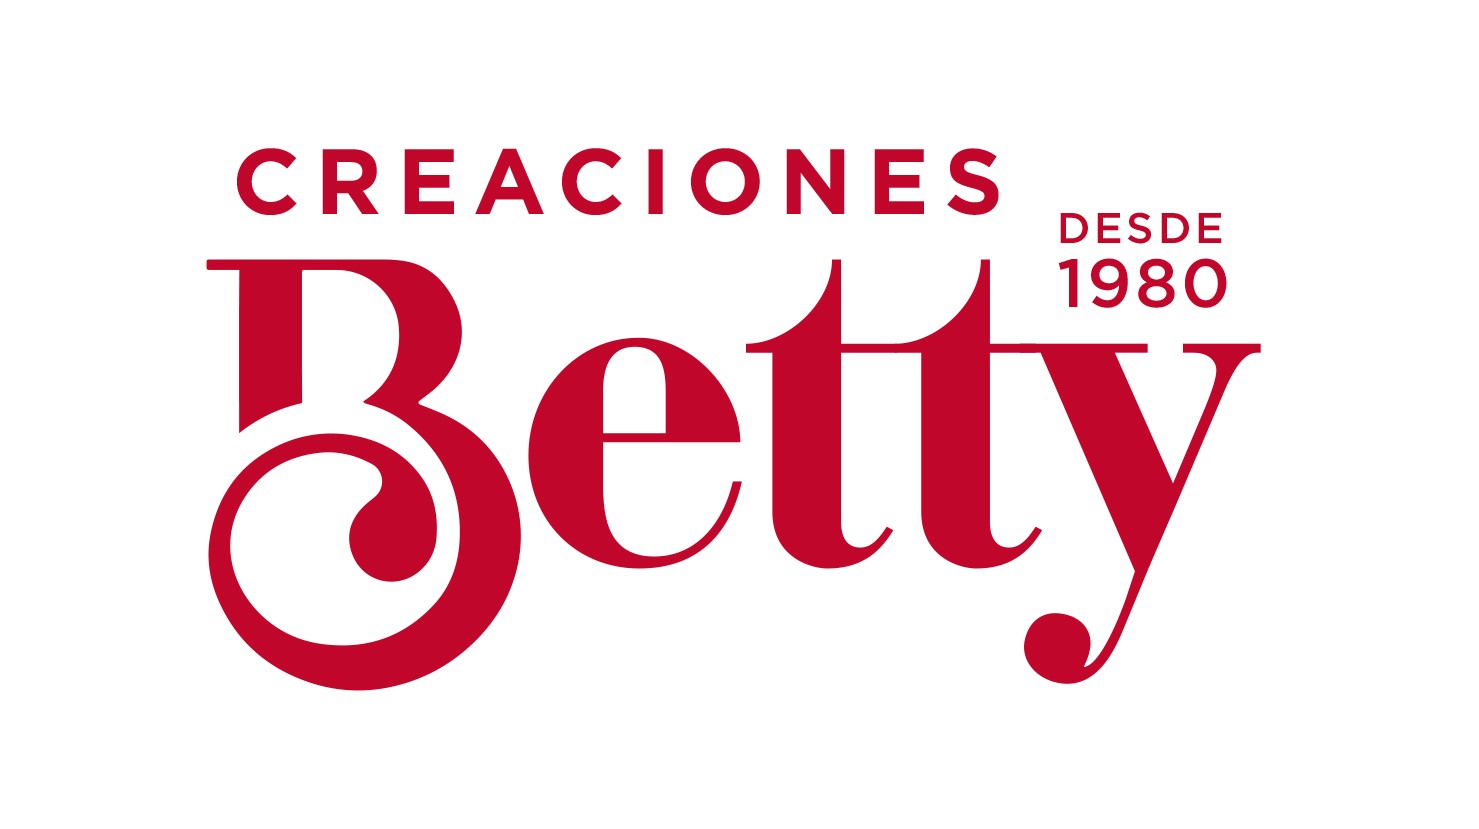 Creaciones Betty